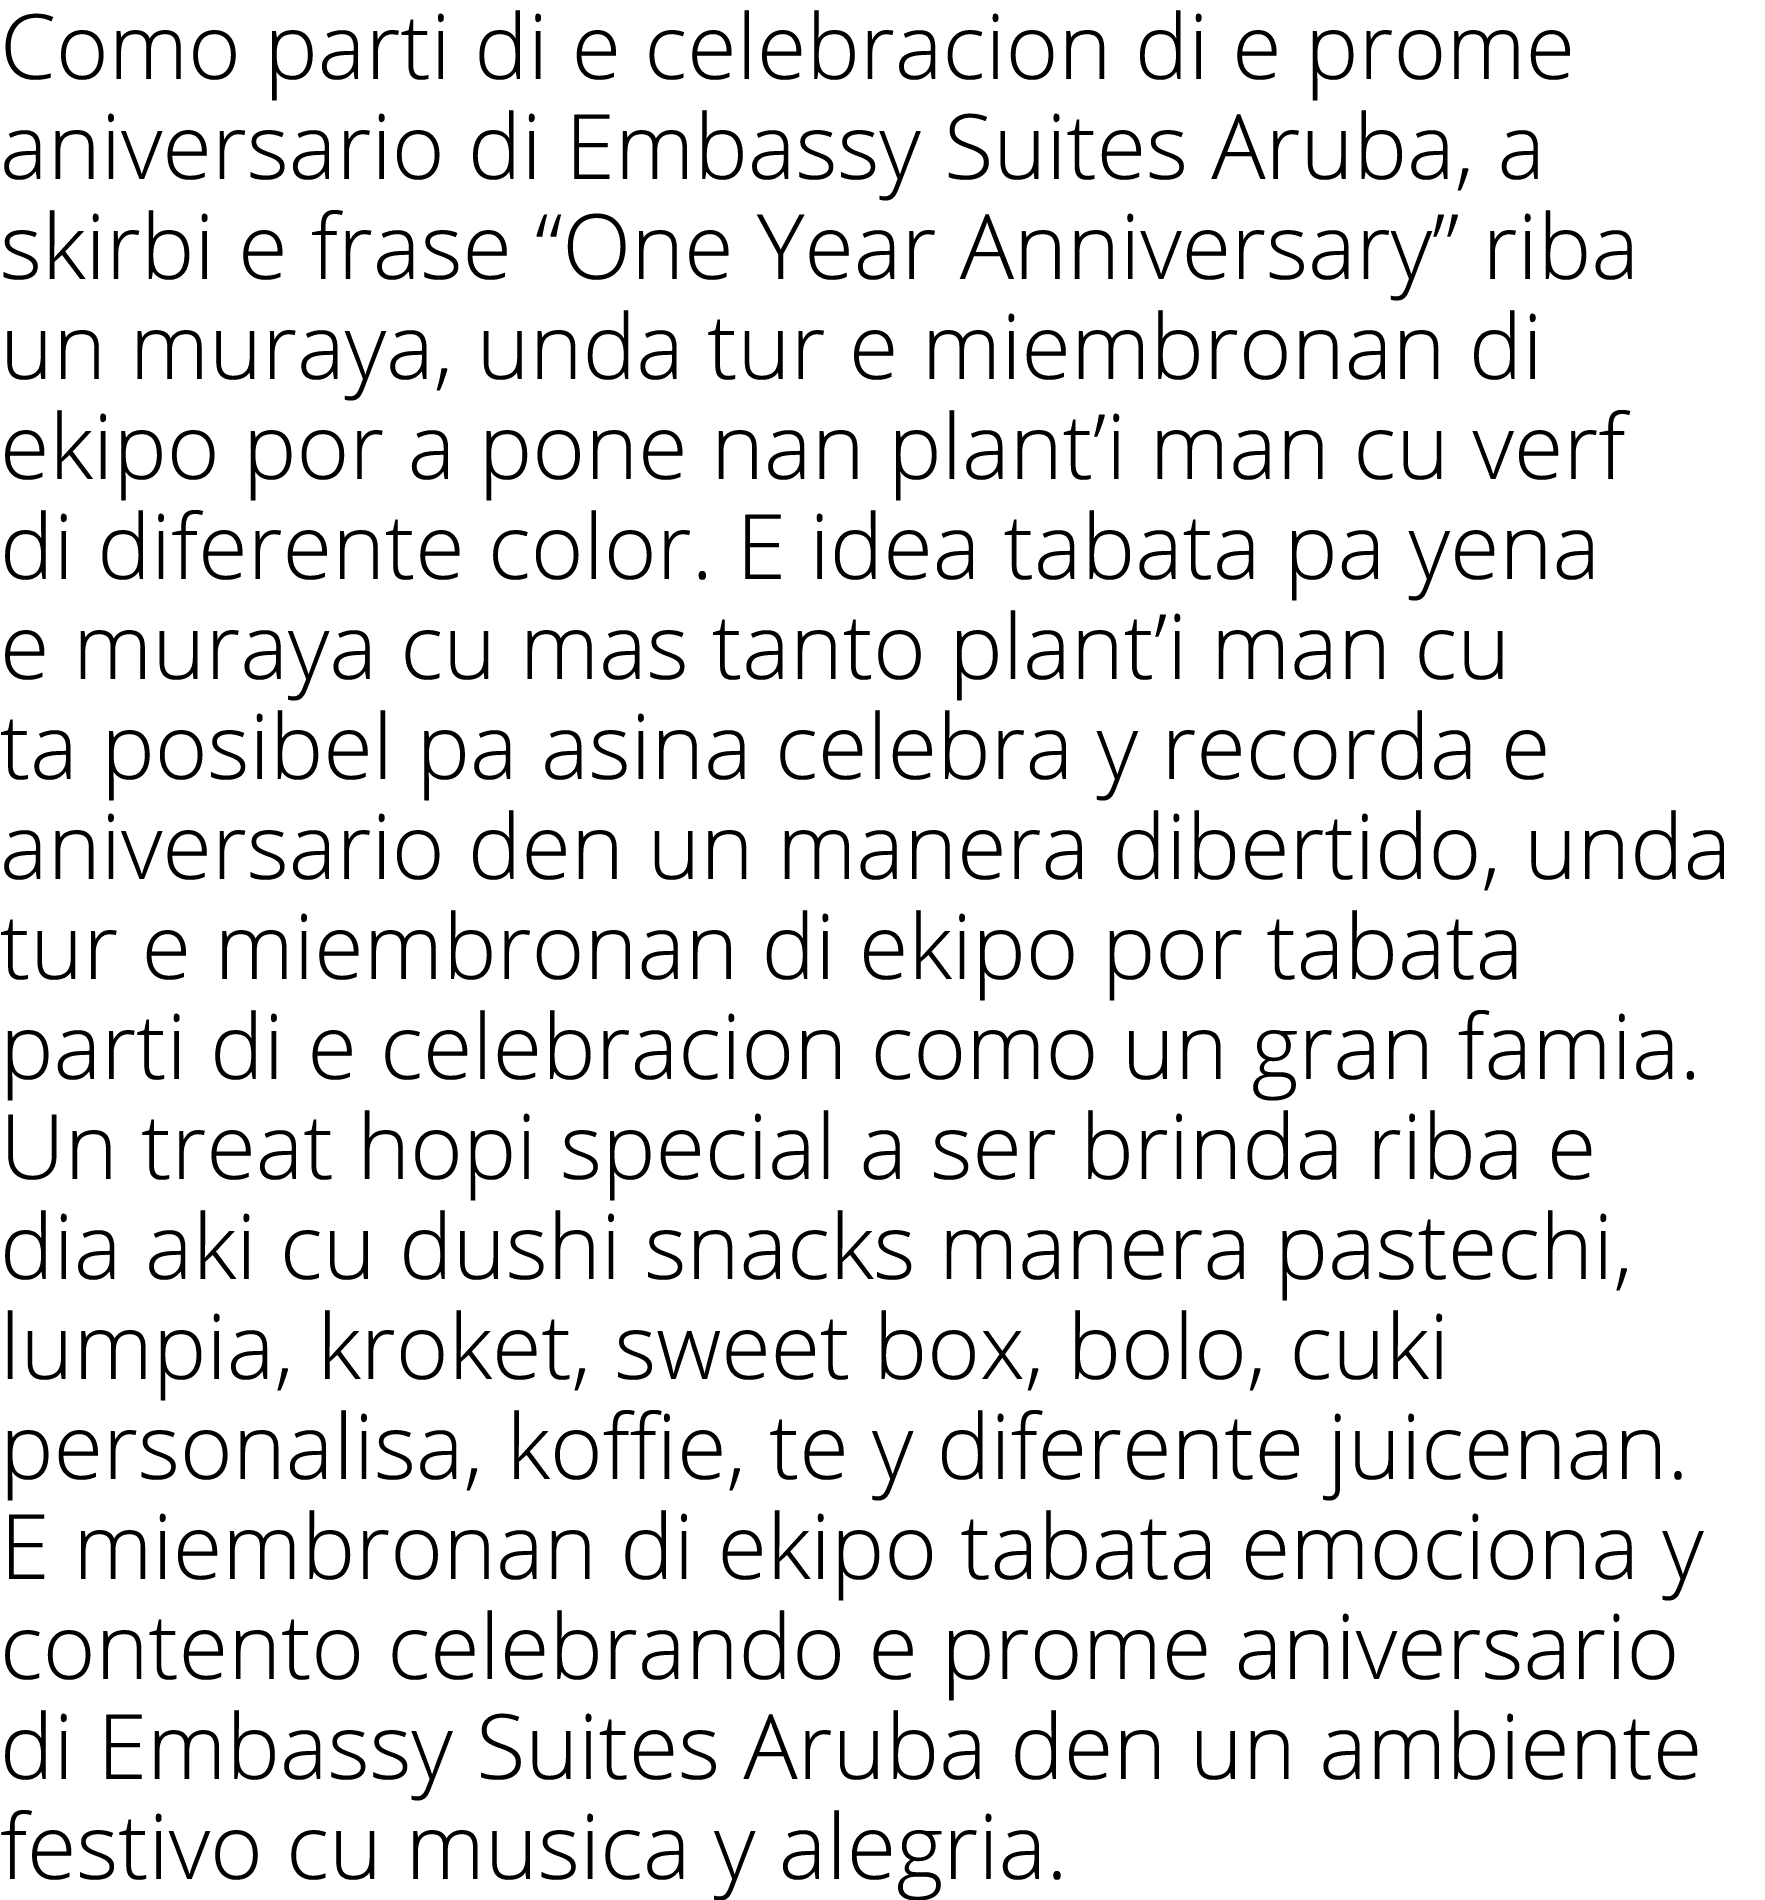 Como parti di e celebracion di e prome aniversario di Embassy Suites Aruba, a skirbi e frase “One Year Anniversary” r...